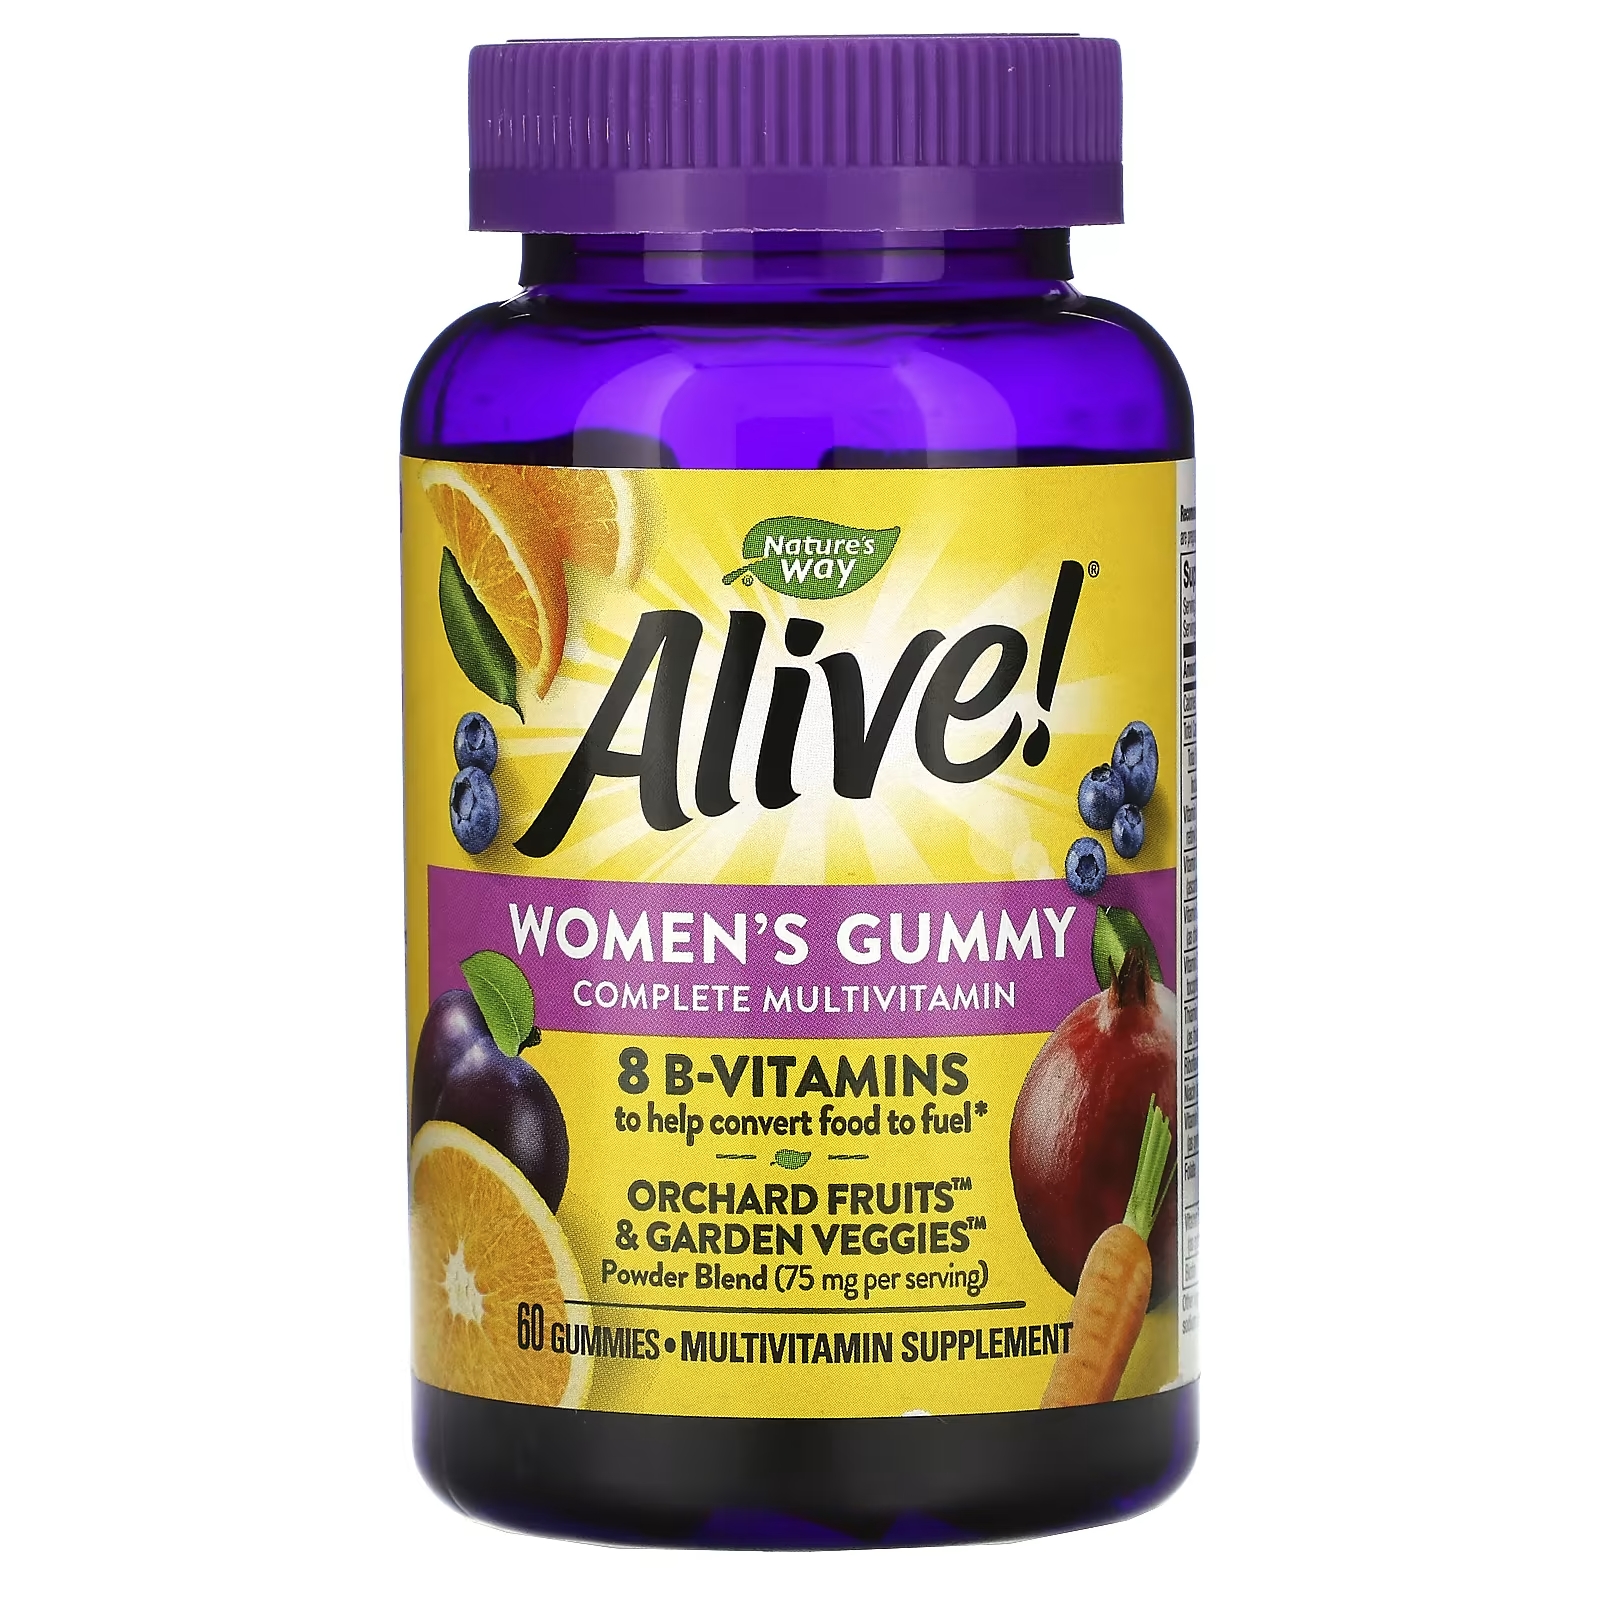 Мультивитаминный Комплекс для Женщин Nature's Way Alive, ягодный вкус, 60 жевательных таблеток nature s way alive garden goodness мультивитамин для женщин 60 таблеток